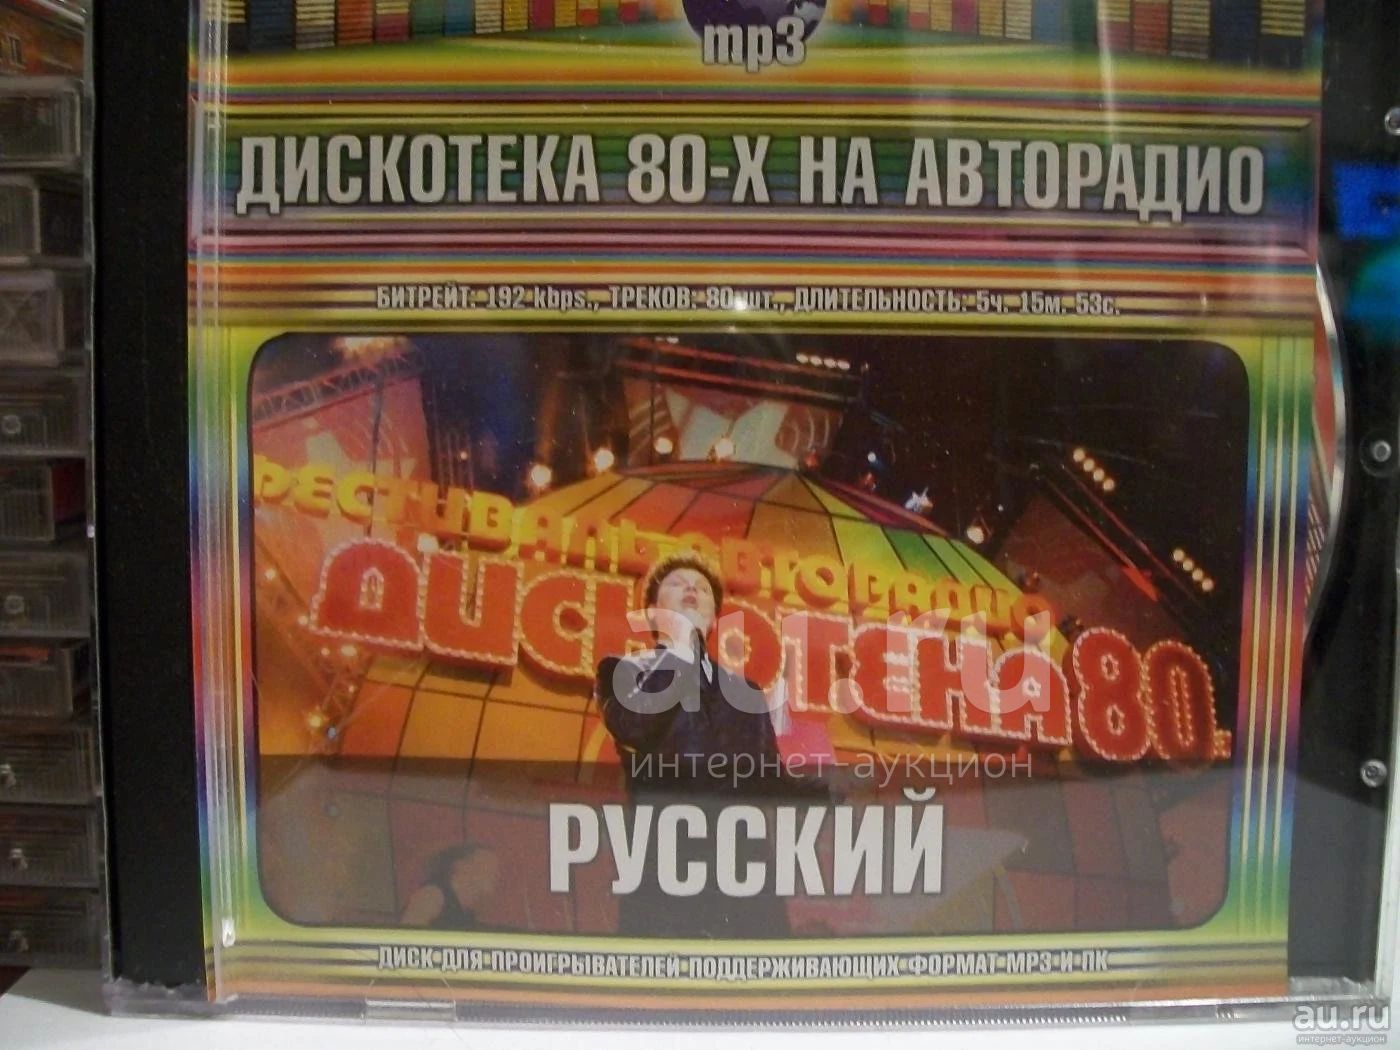 Сборник русская дискотека 70. CD диск Авторадио дискотека 80-х. Авторадио дискотека 80 диск. Дискотека 90-х на Авторадио 2005. Двд диски проигрыватели Авторадио дискотека 80 -90.